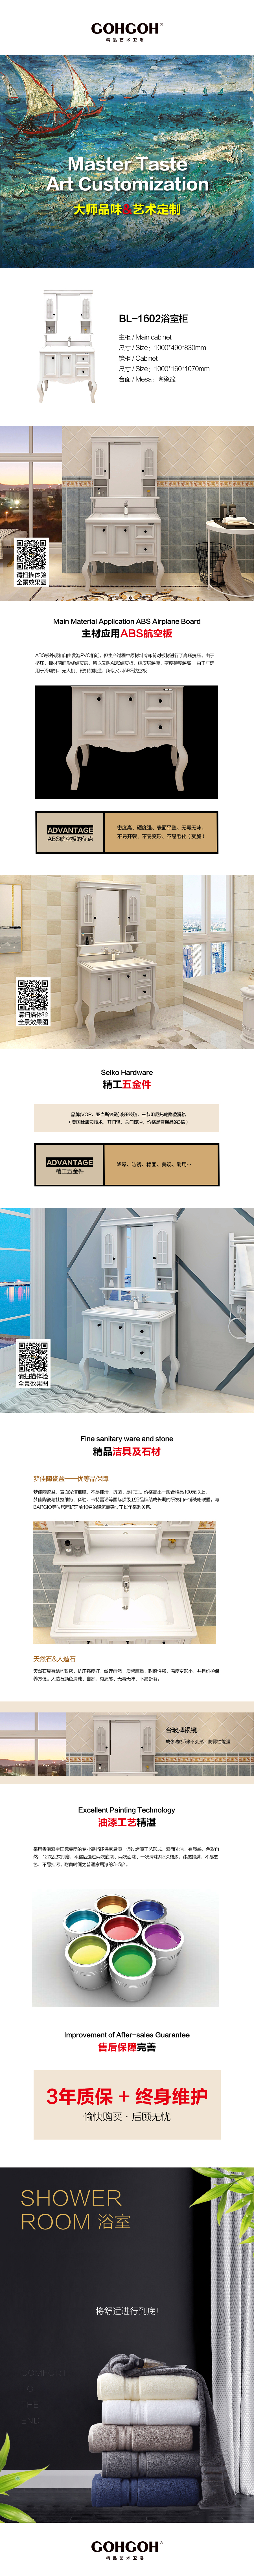 GOHGOH浴室柜 落地式浴室柜 一体陶瓷盆浴室柜 现代简约PVC浴室柜BL-1602